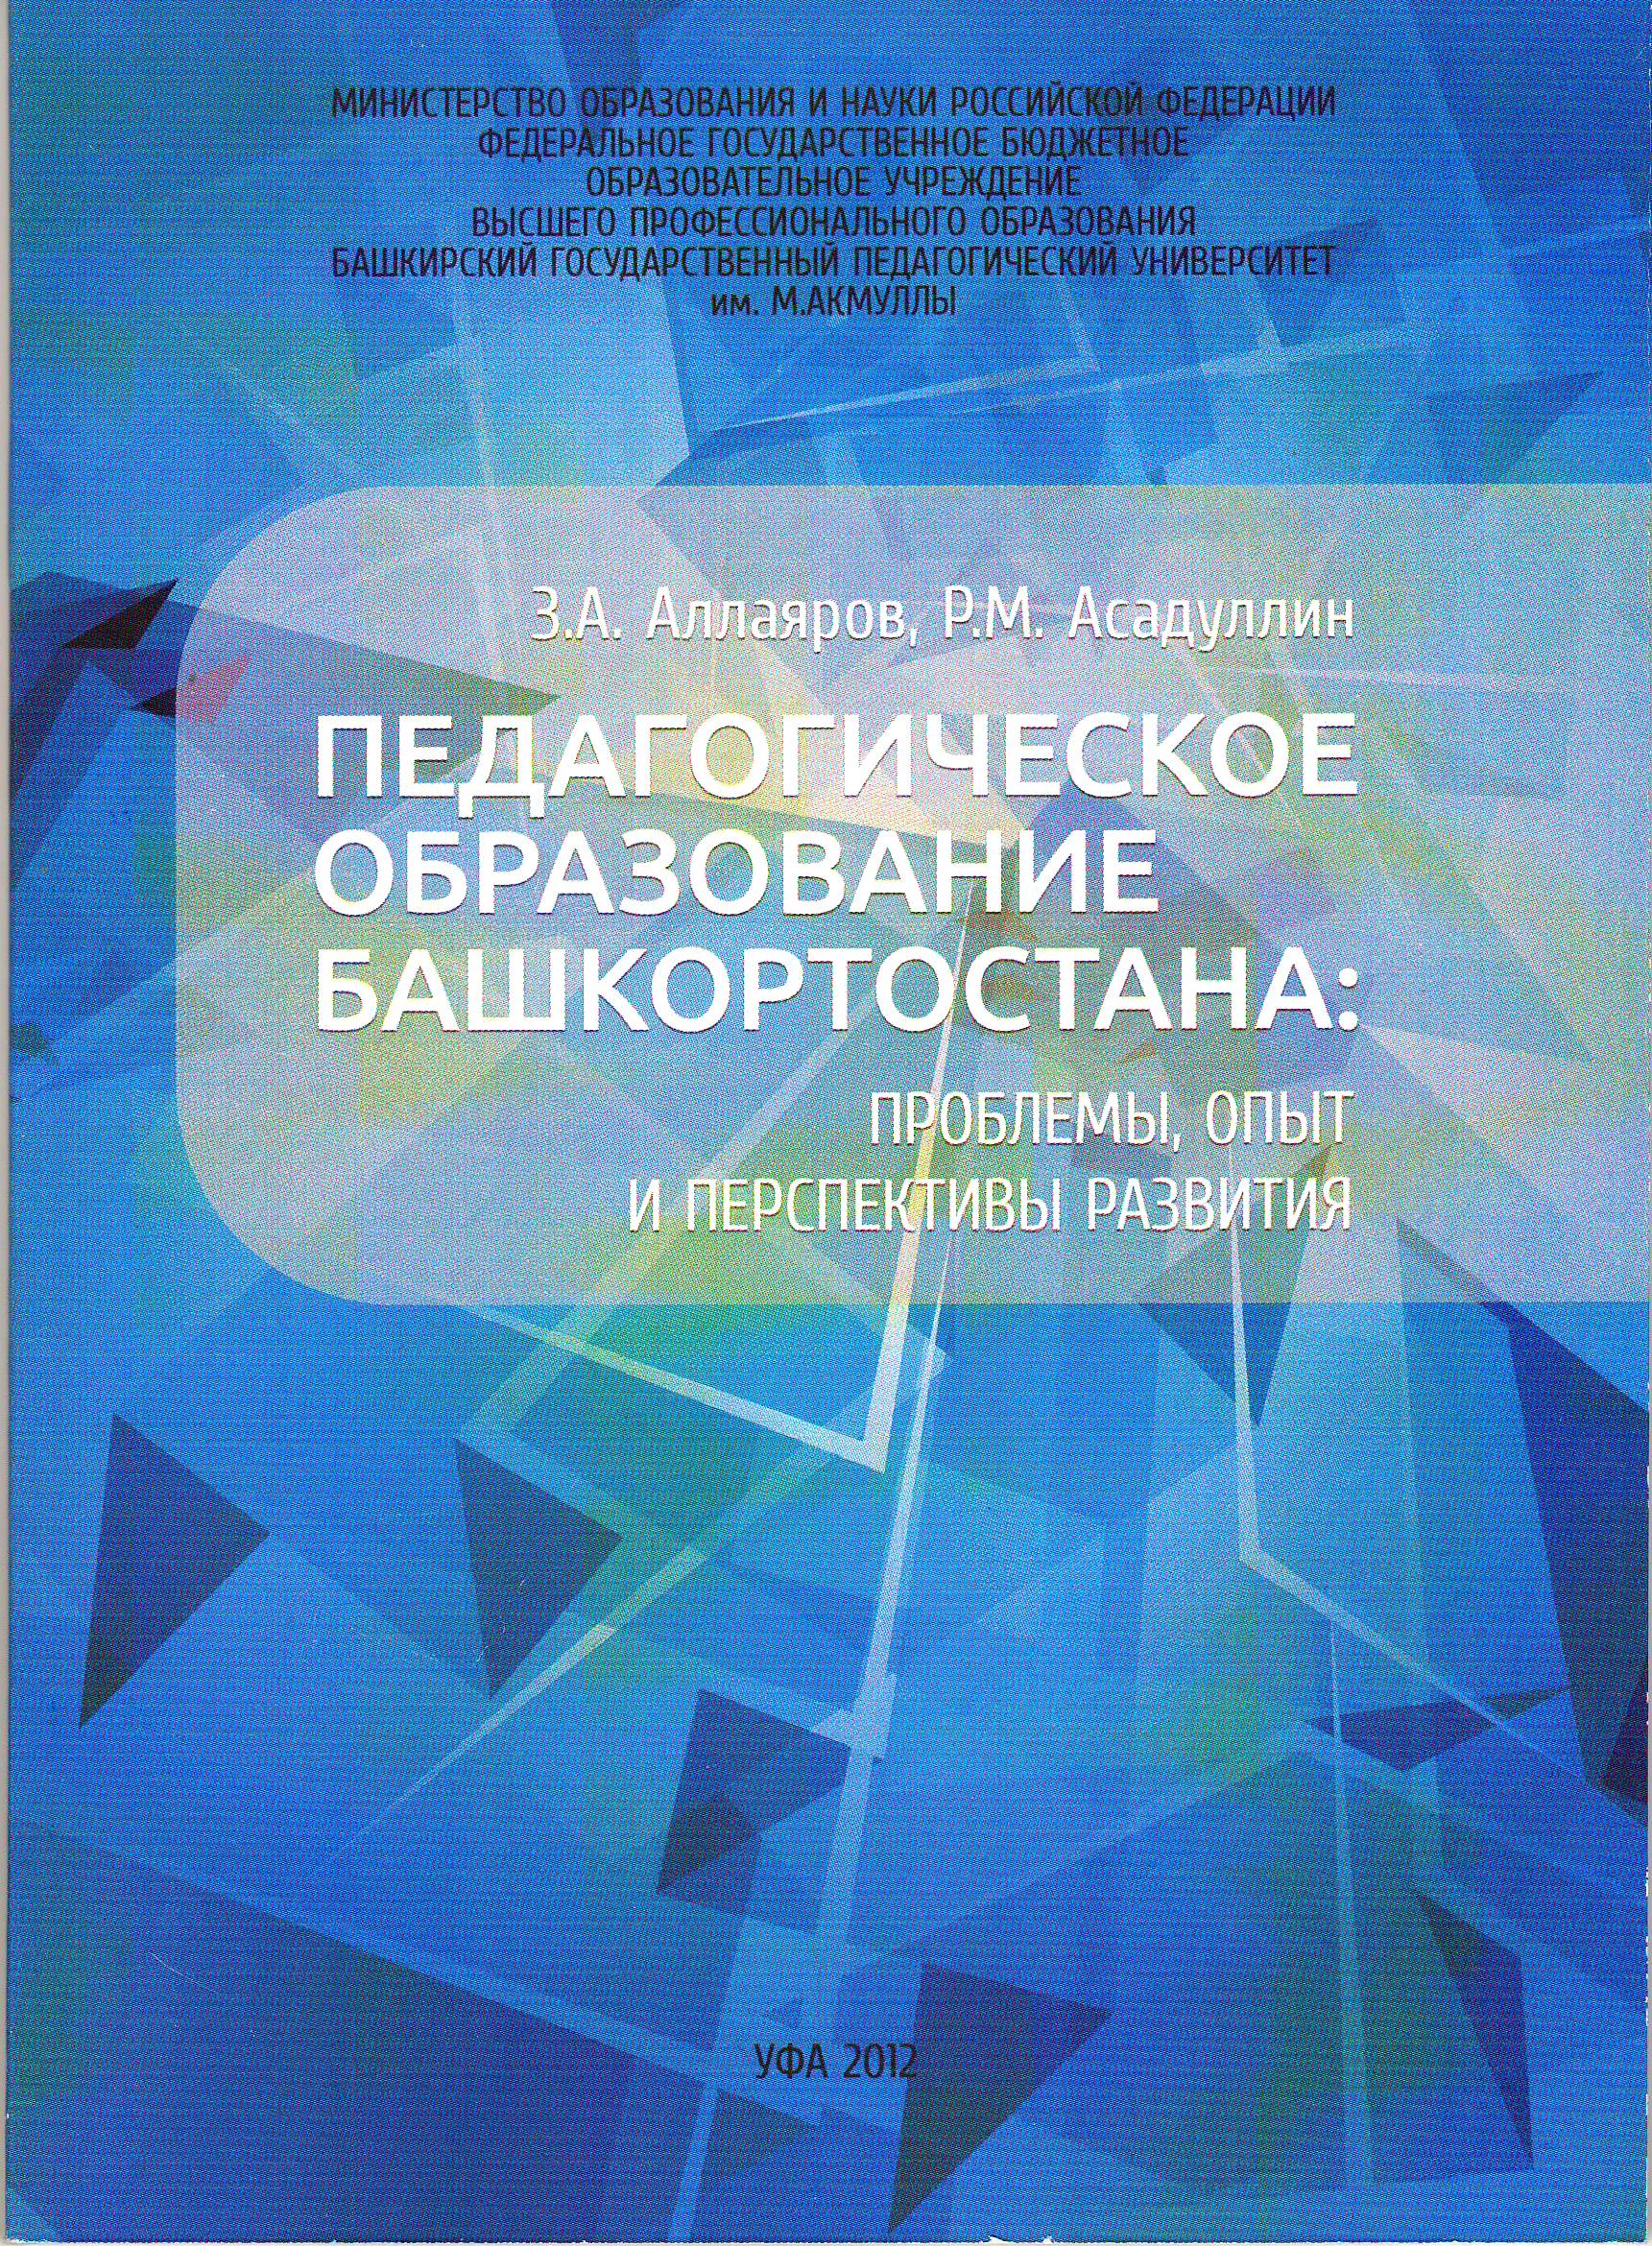 Педагогическое образование Башкортостана: проблемы, опыт и перспективы развития